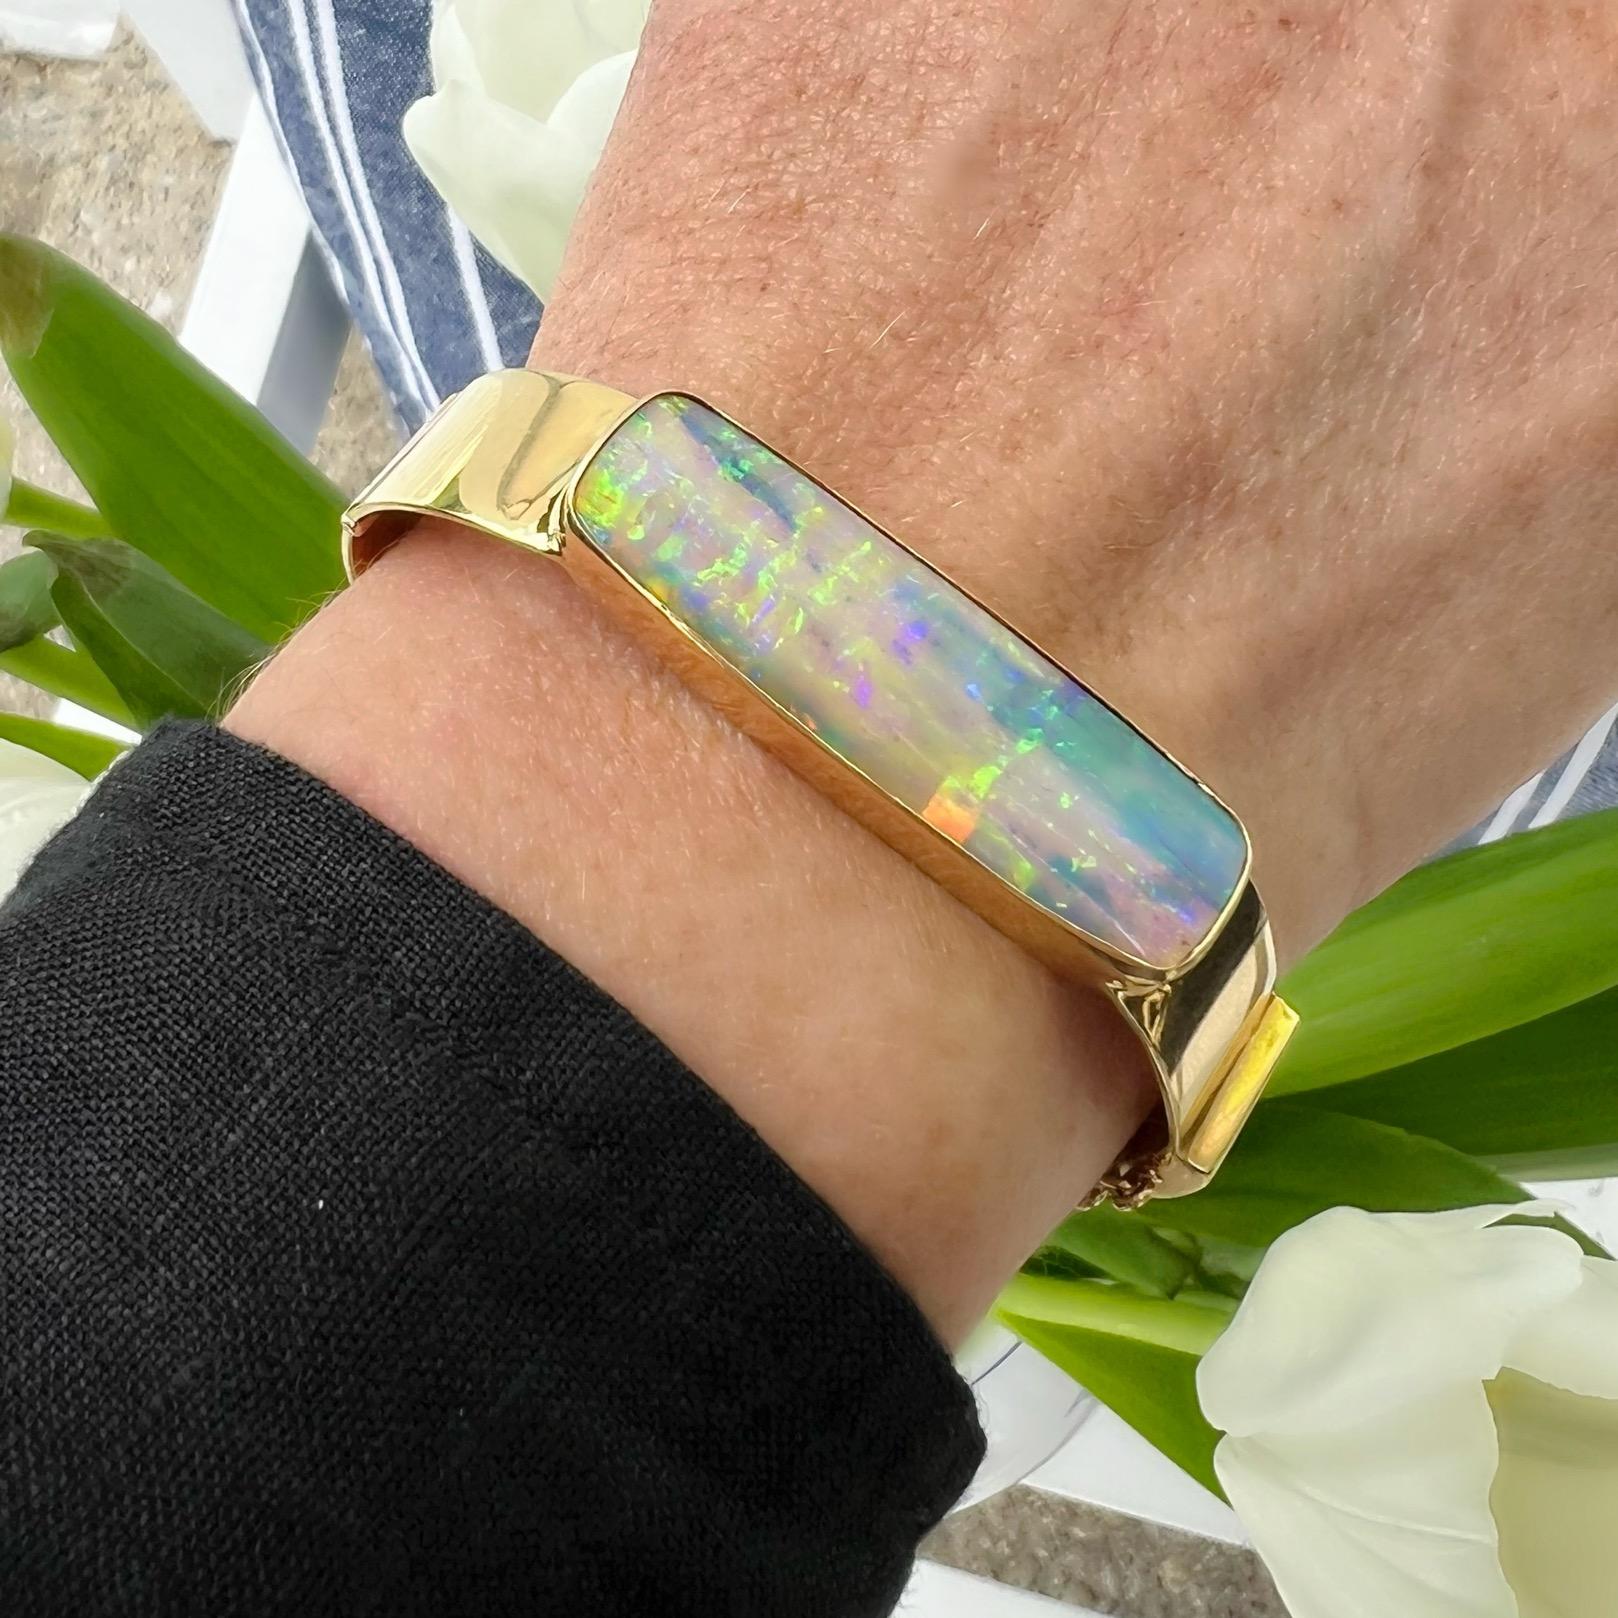 Le parfait bonbon pour le poignet ! Ce bracelet en or jaune 18 carats est orné d'une opale australienne pesant environ 25 carats et affichant des teintes claires et vibrantes de rose, de vert et de bleu. Le bracelet mesure 12,5 mm à son point le